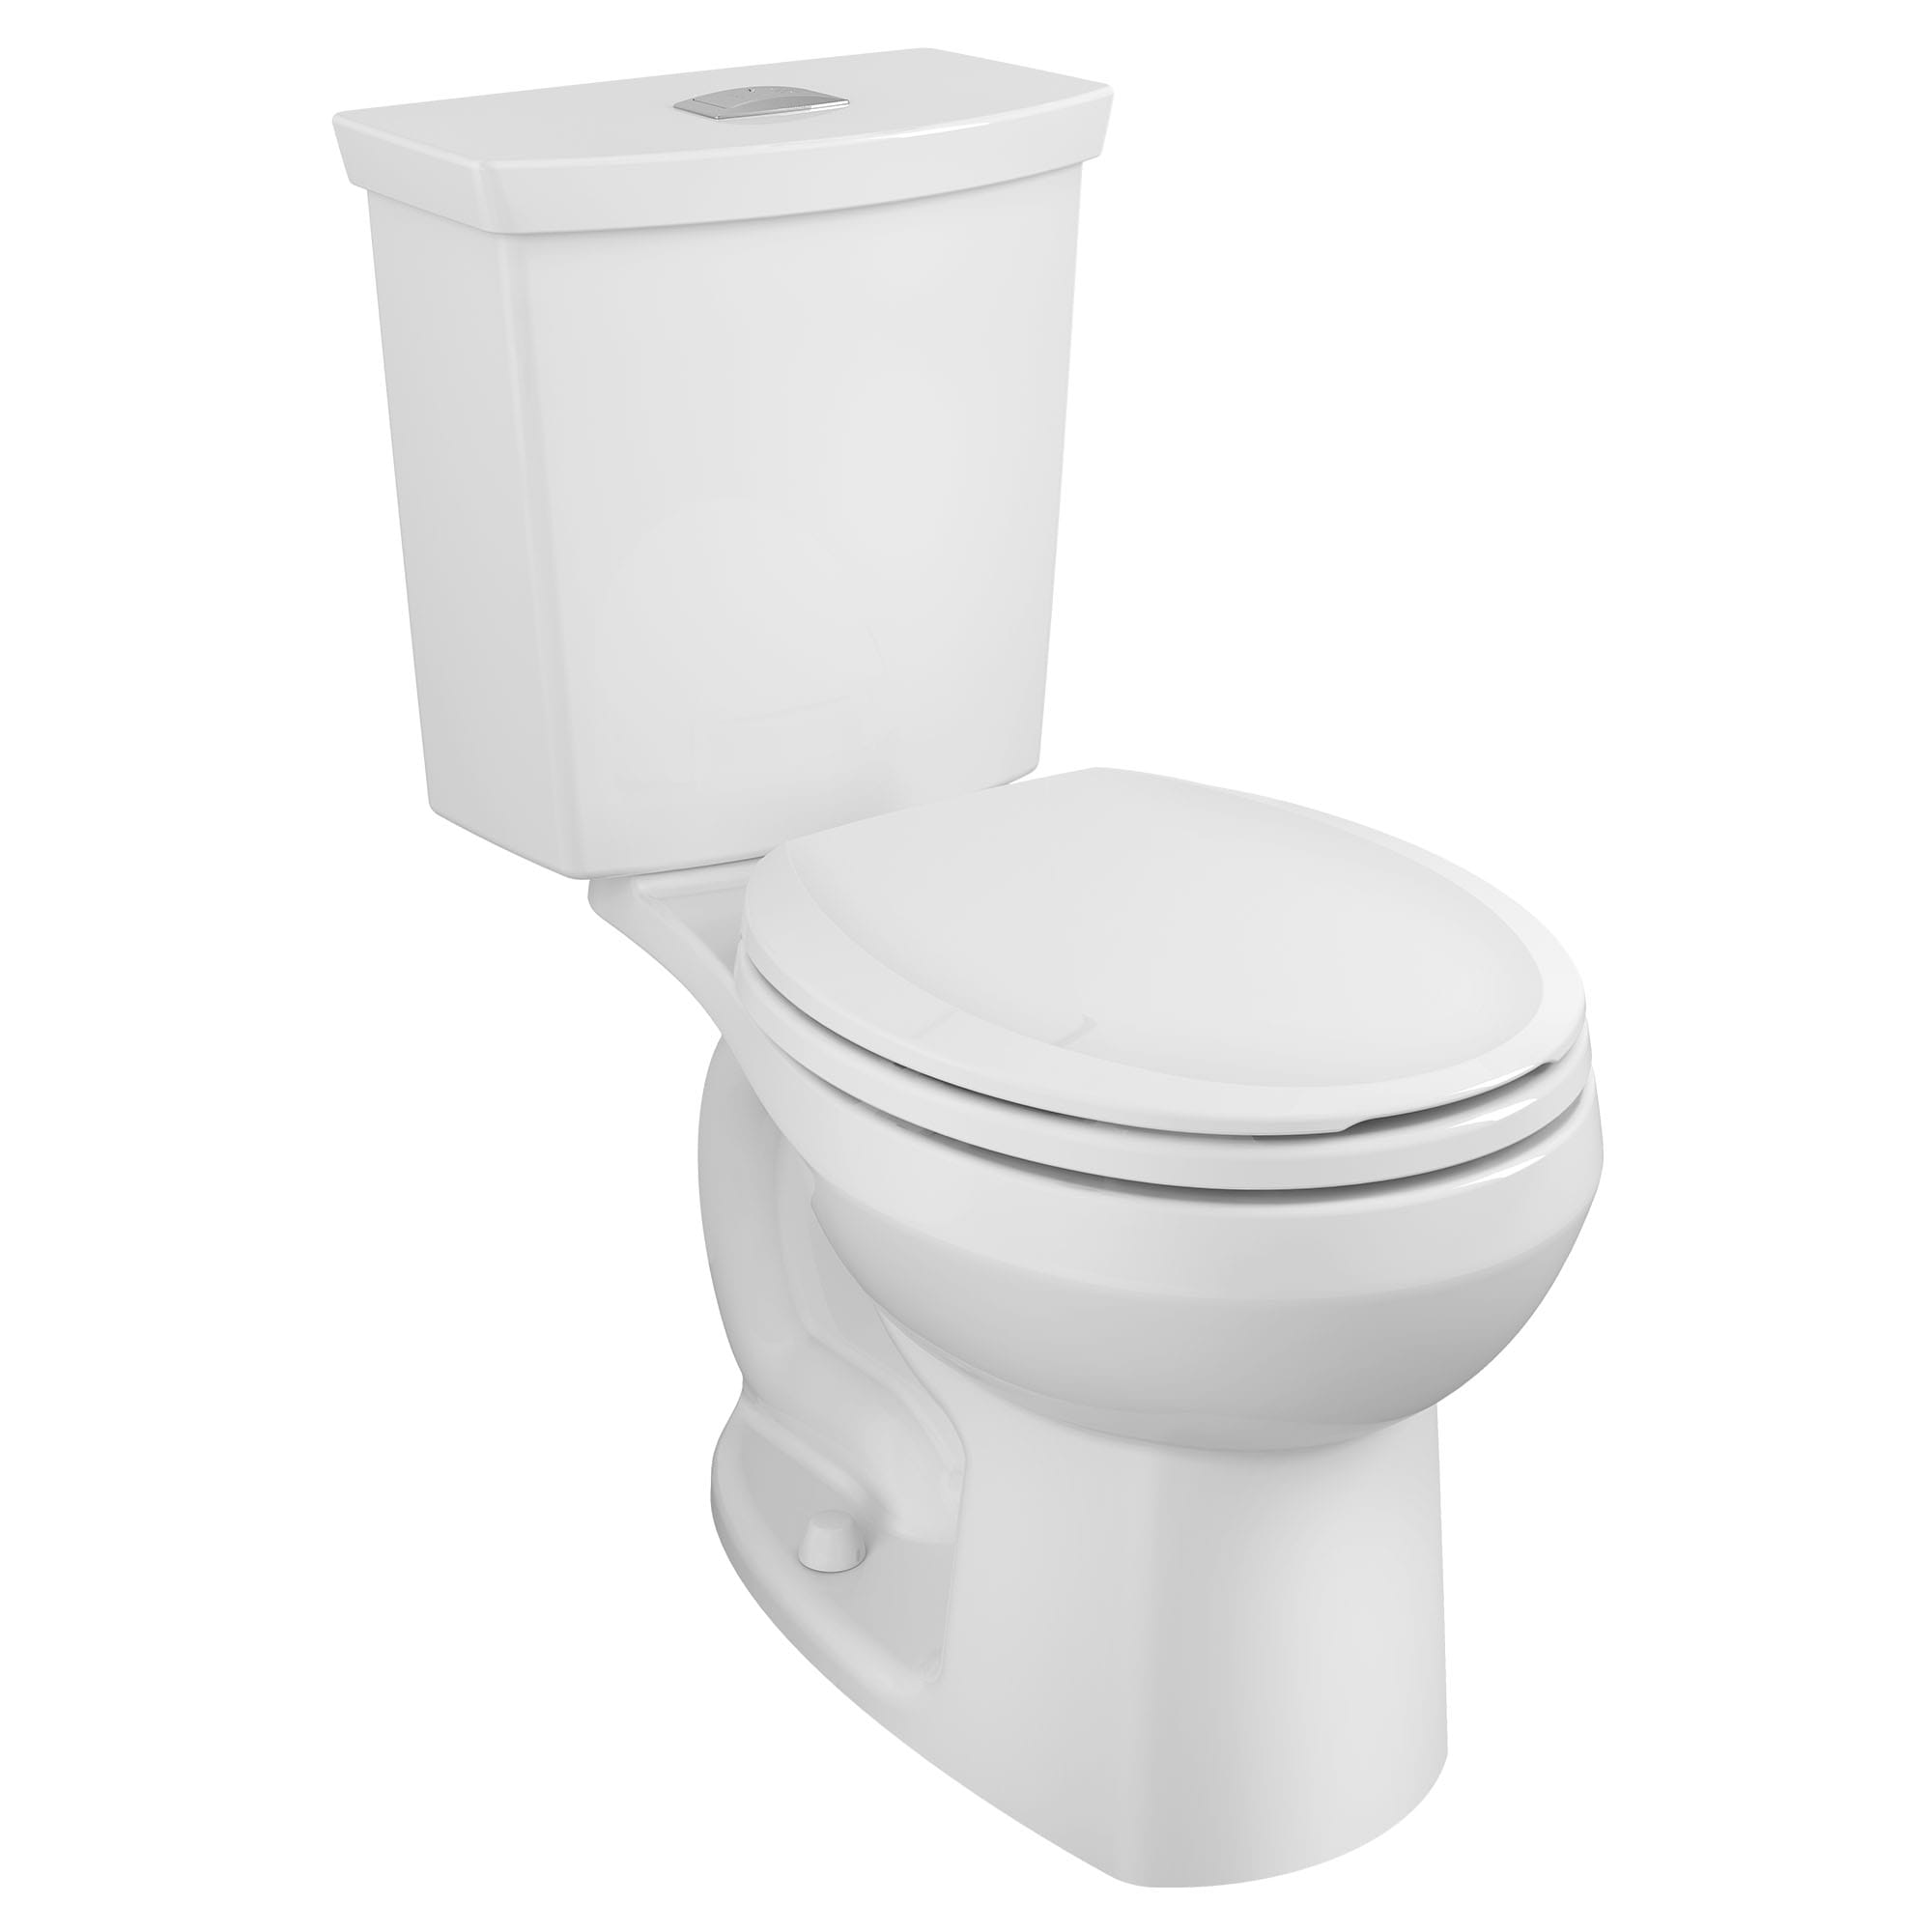 Toilette H2Option, 2 pièces, chasse double 1,28 gpc/4,8 lpc et 0,92 gpc/3,5 lpc, à cuvette au devant rond à hauteur régulière et réservoir avec doublure, sans siège